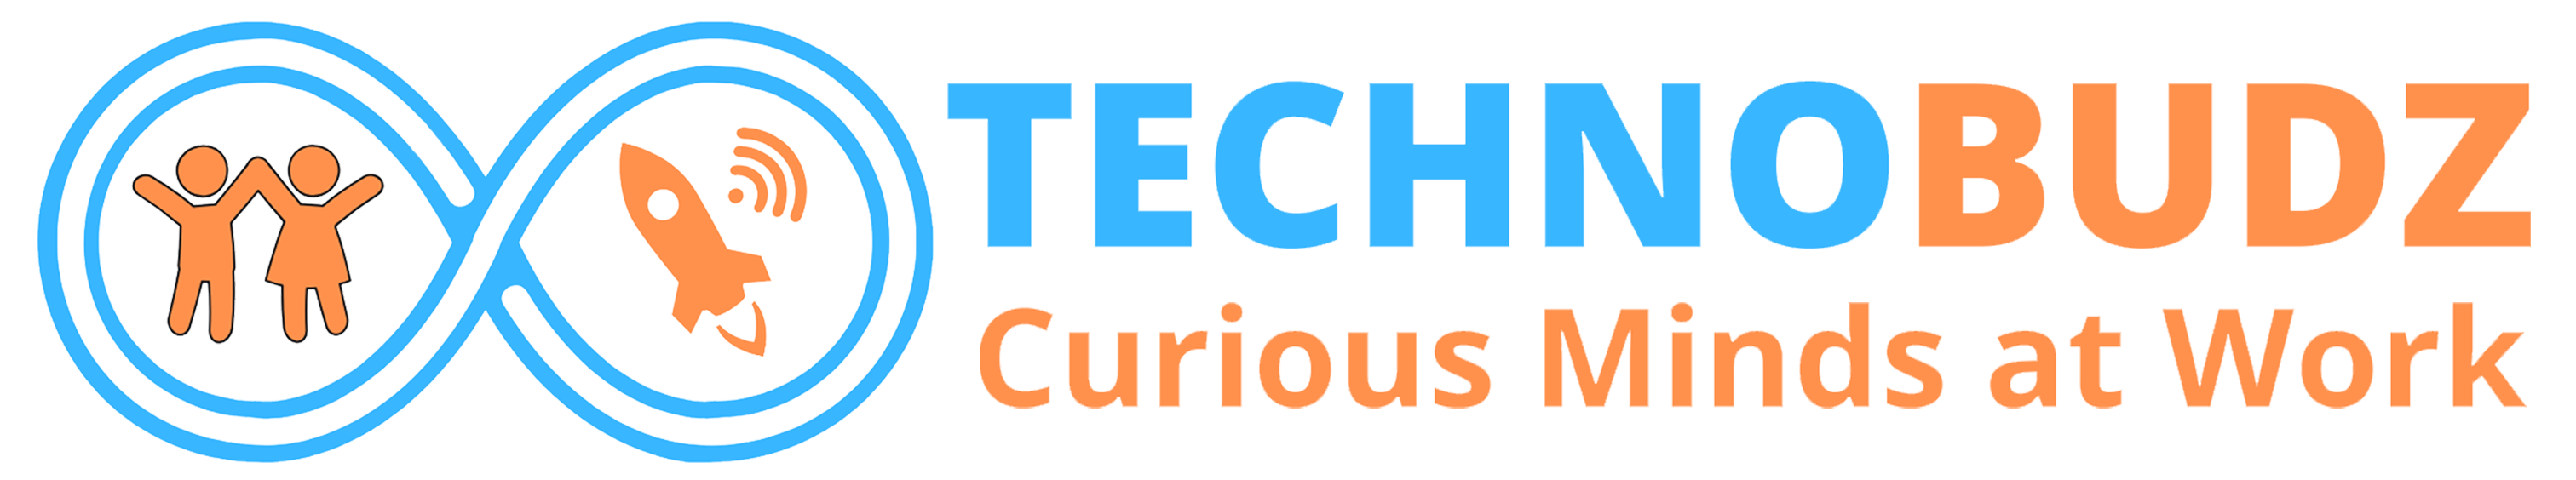 TechnoBudz